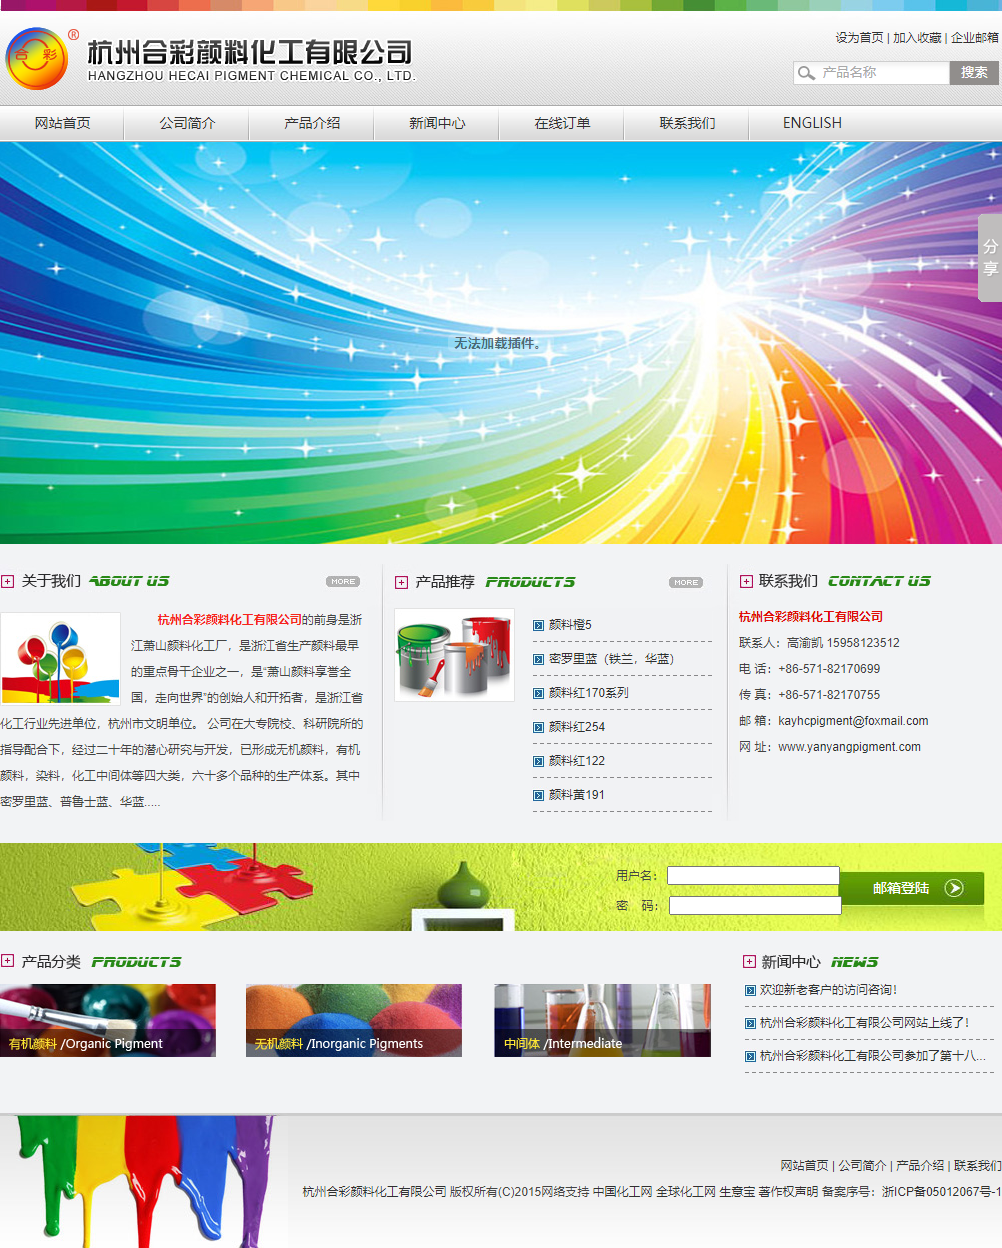 杭州合彩颜料化工有限公司网站案例